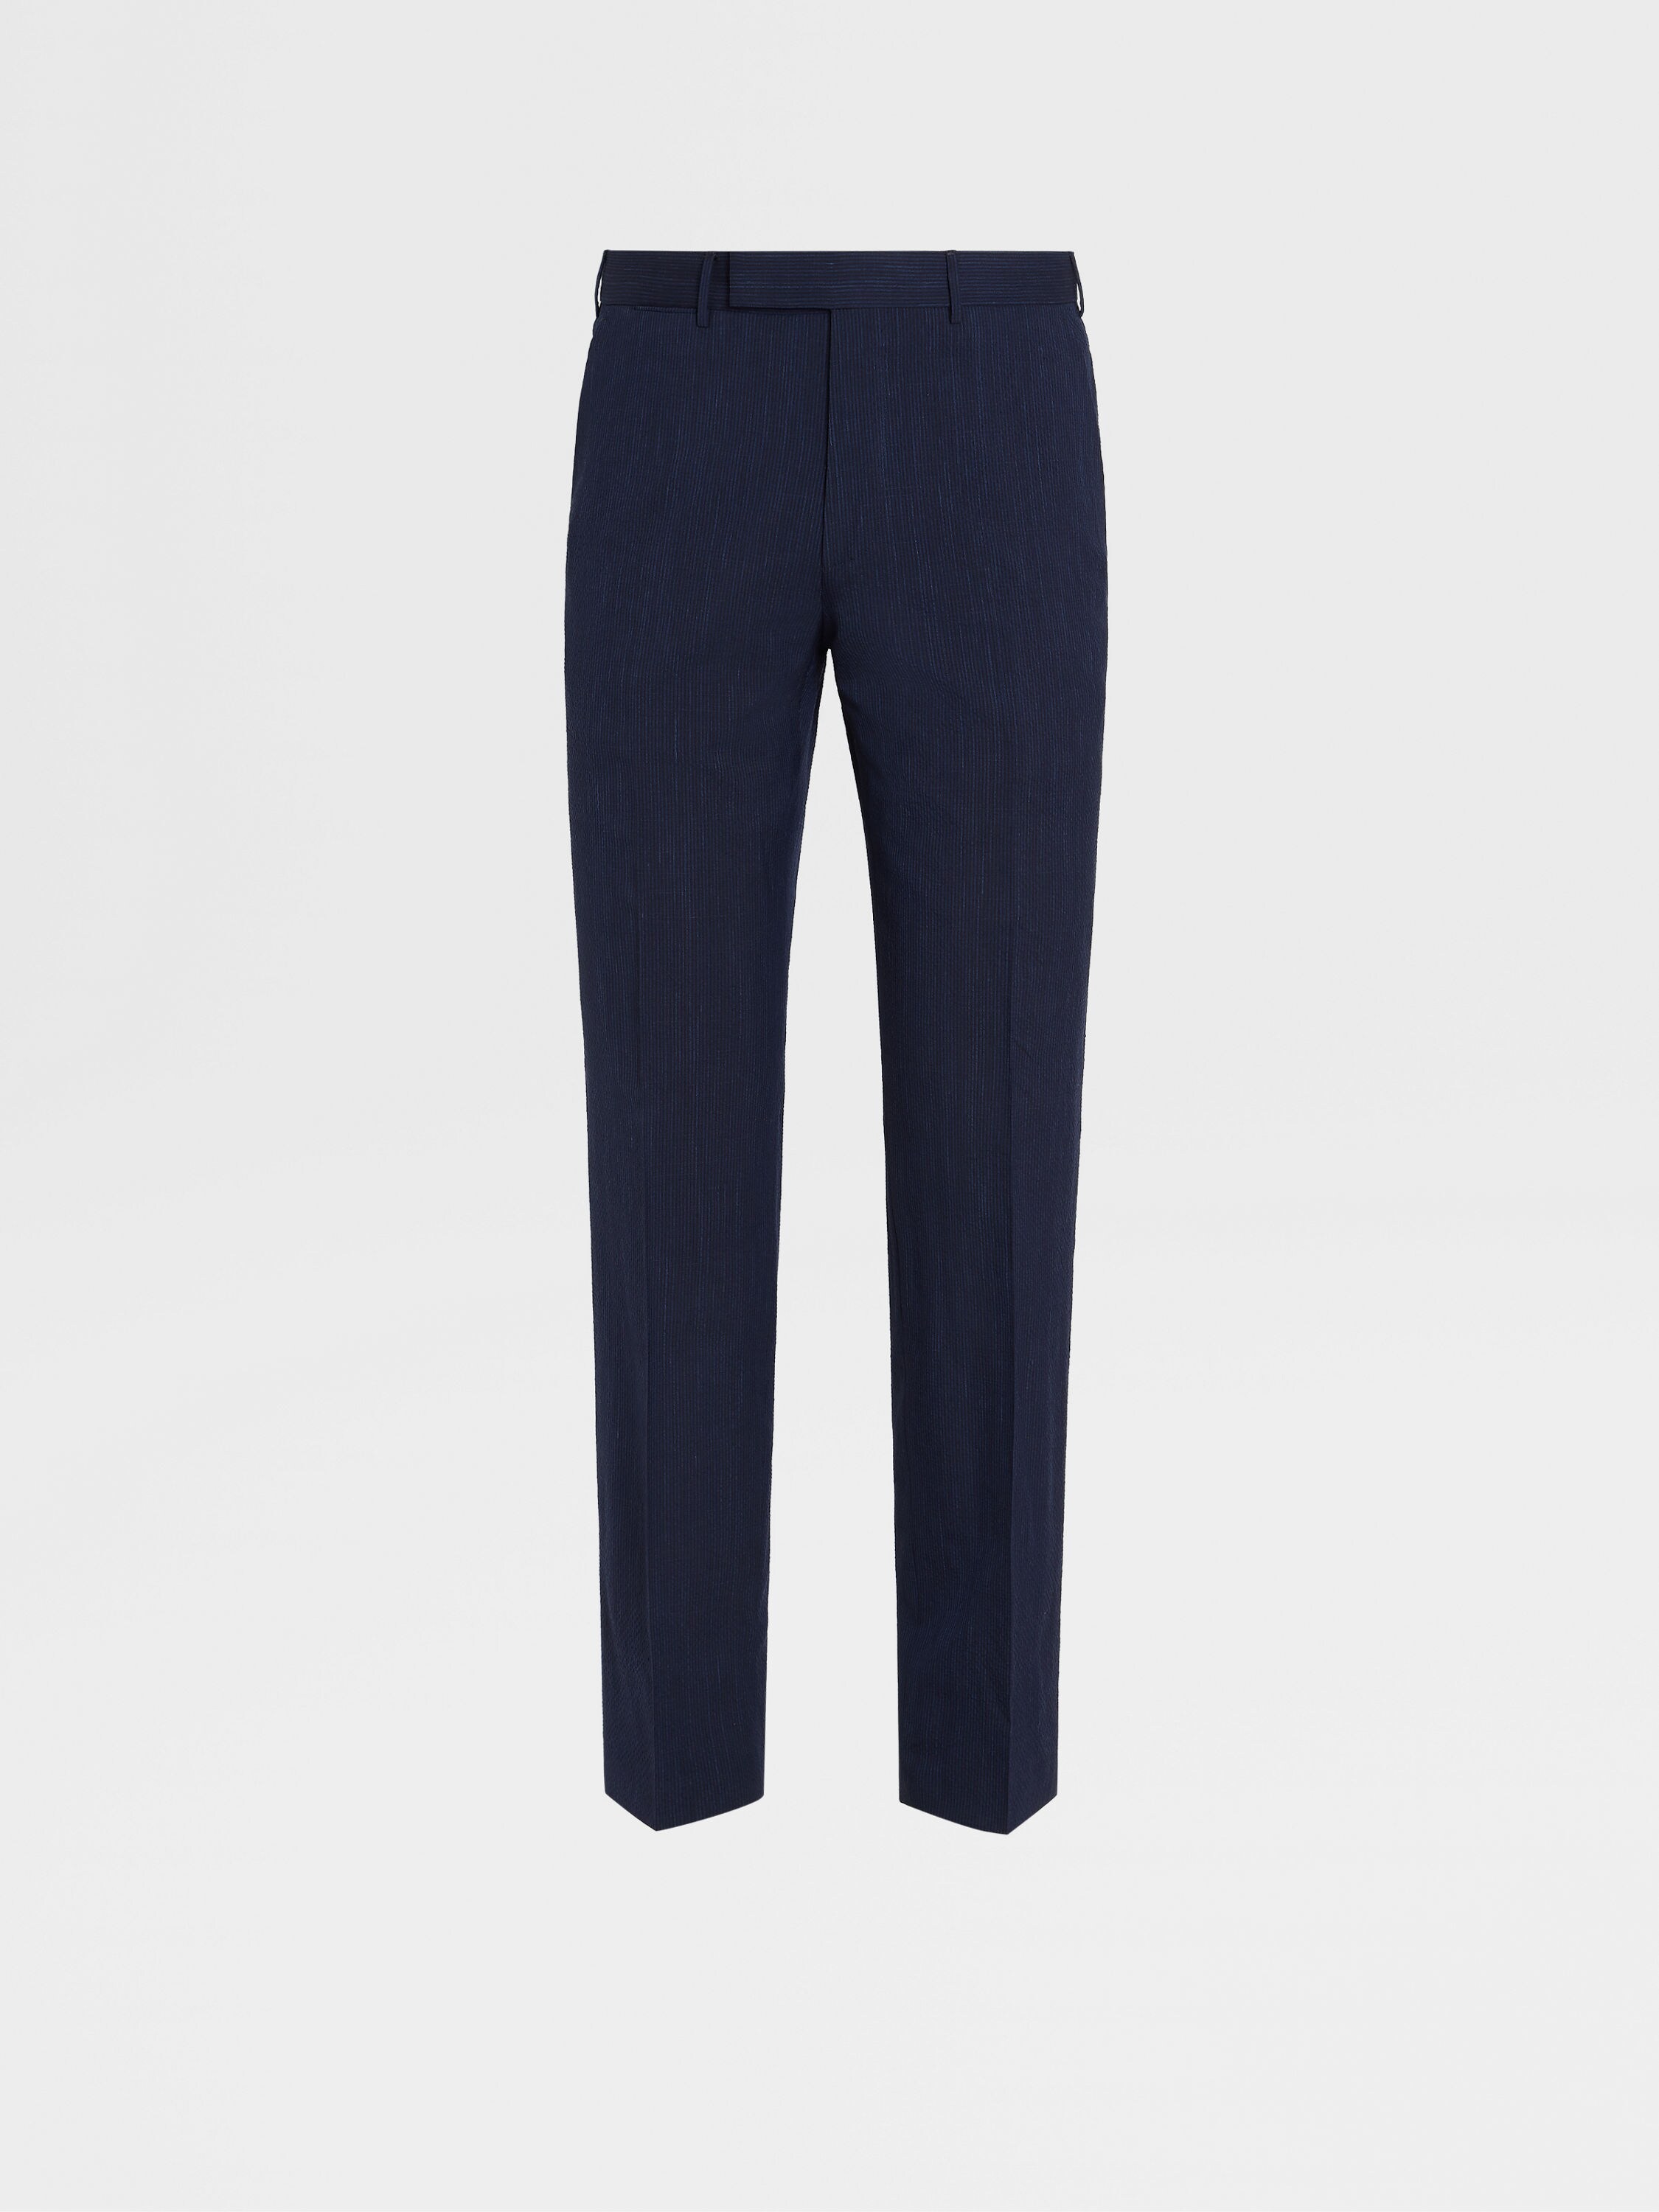 Blue and Navy Trofeo™ Seersucker Wool and Silk Blend Pants